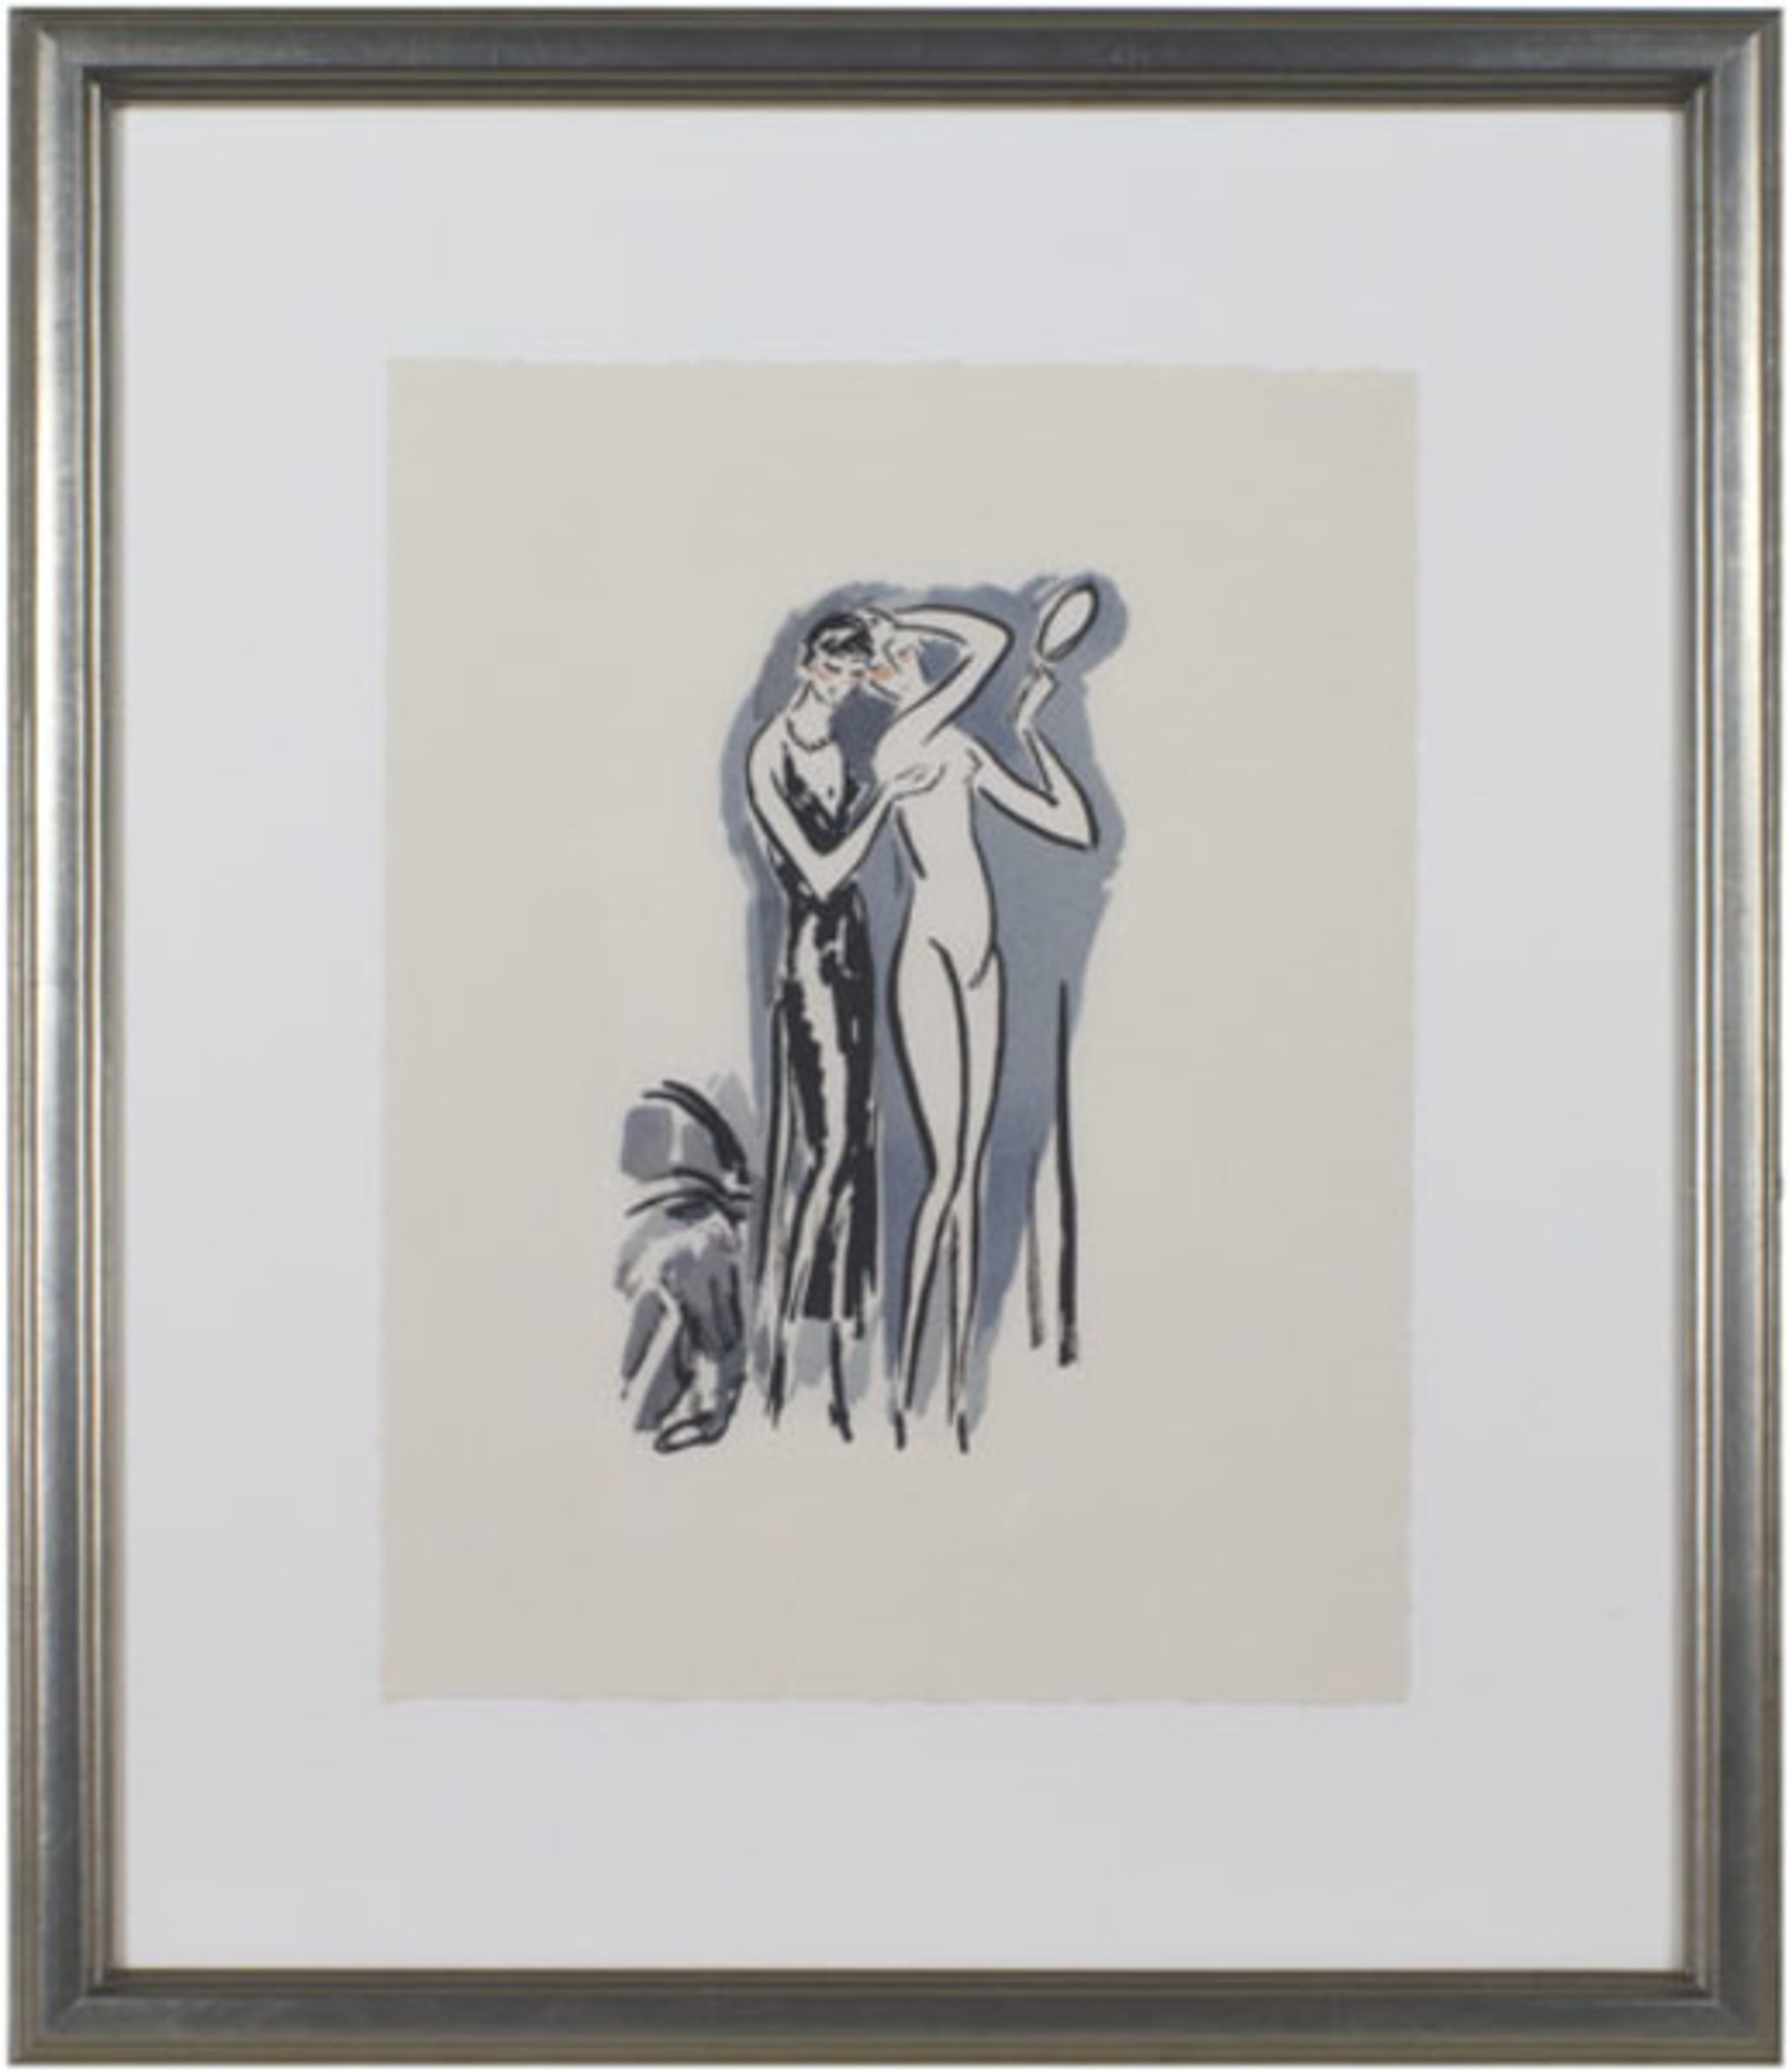 Two Women with Mirror -La Garconne Series- Deux femmes avec un miroir by Kees Van Dongen (after)